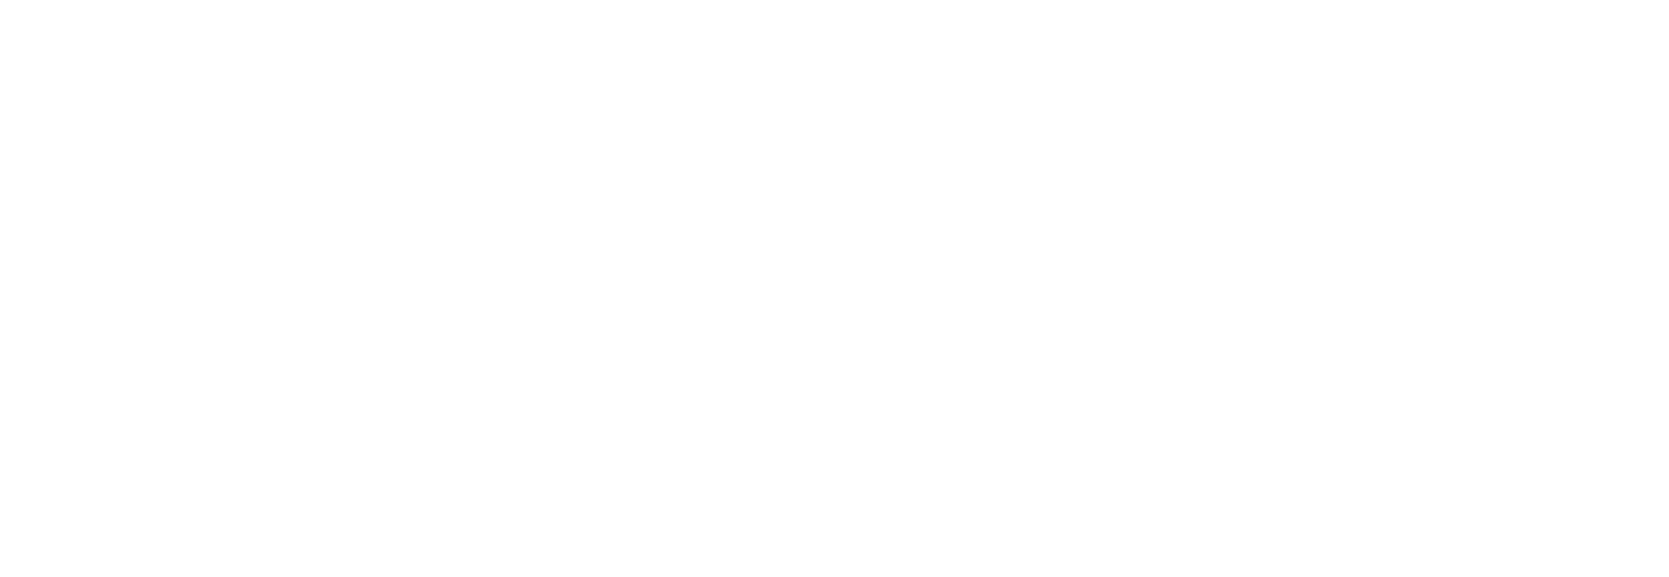 Logo der Steuerkanzlei Armin Gail in weiß